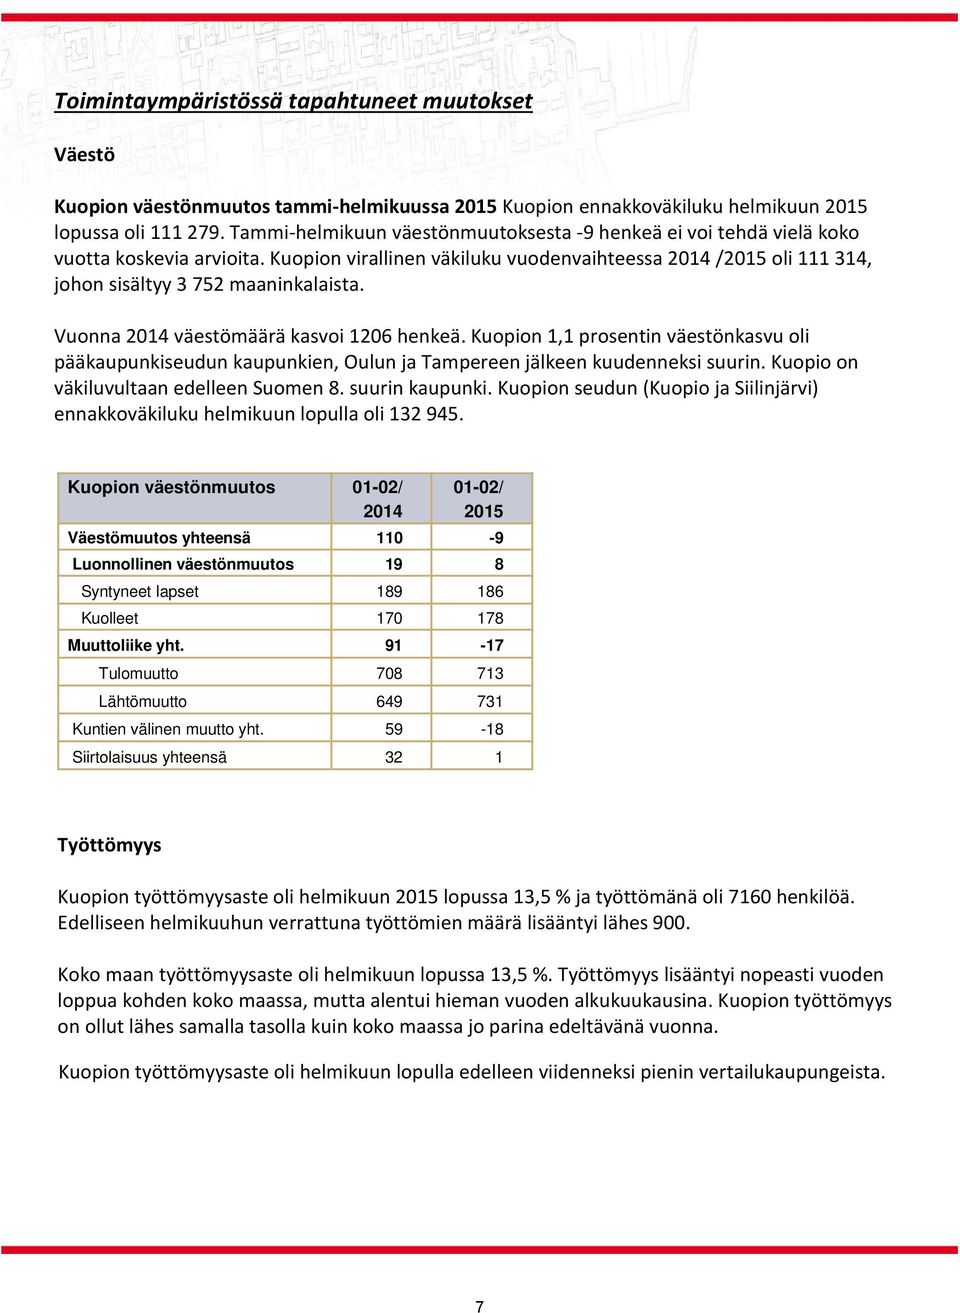 Vuonna 2014 väestömäärä kasvoi 1206 henkeä. Kuopion 1,1 prosentin väestönkasvu oli pääkaupunkiseudun kaupunkien, Oulun ja Tampereen jälkeen kuudenneksi suurin.